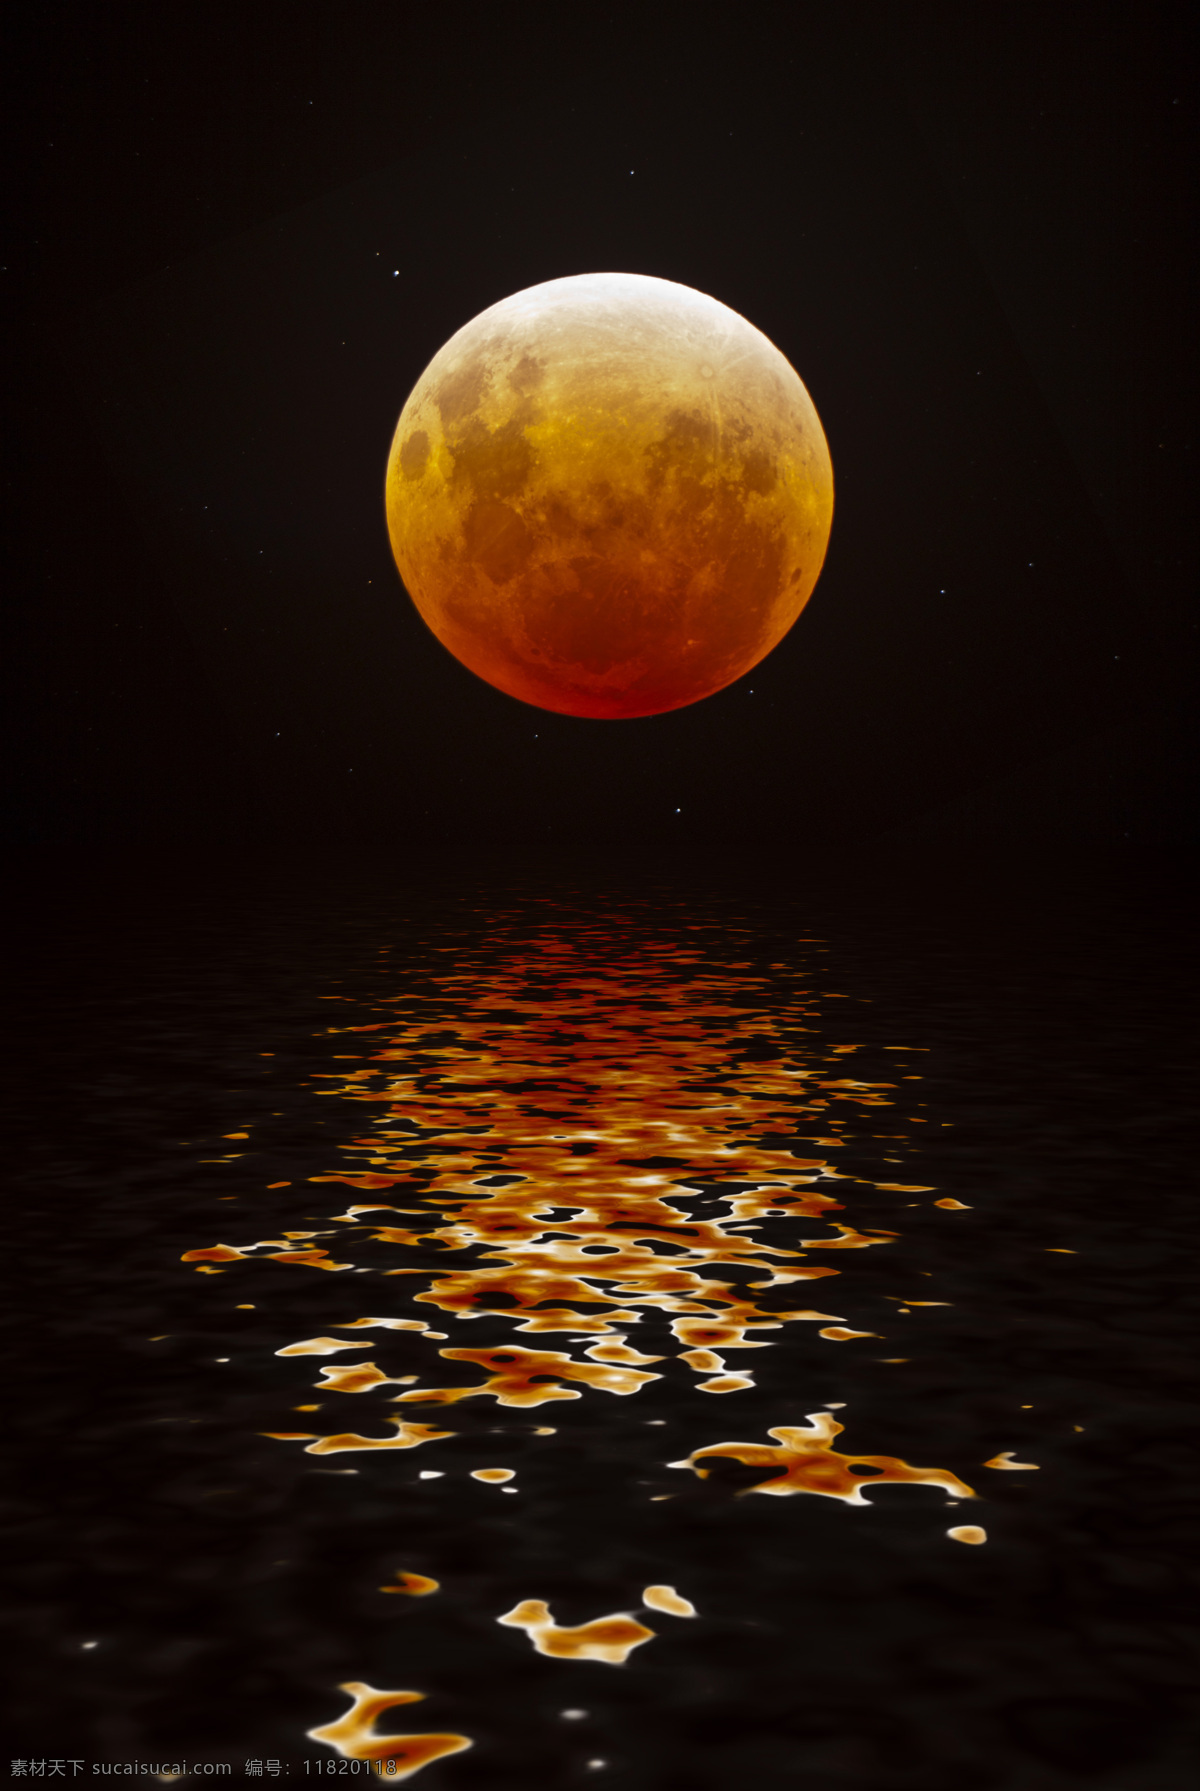 唯美 月亮 倒影 月球 水面 波光粼粼 夜空 夜色 超级月亮 赏月 中秋 夜晚 海面倒影 月光 天空唯美风景 宇宙太空 现代科技 黑色